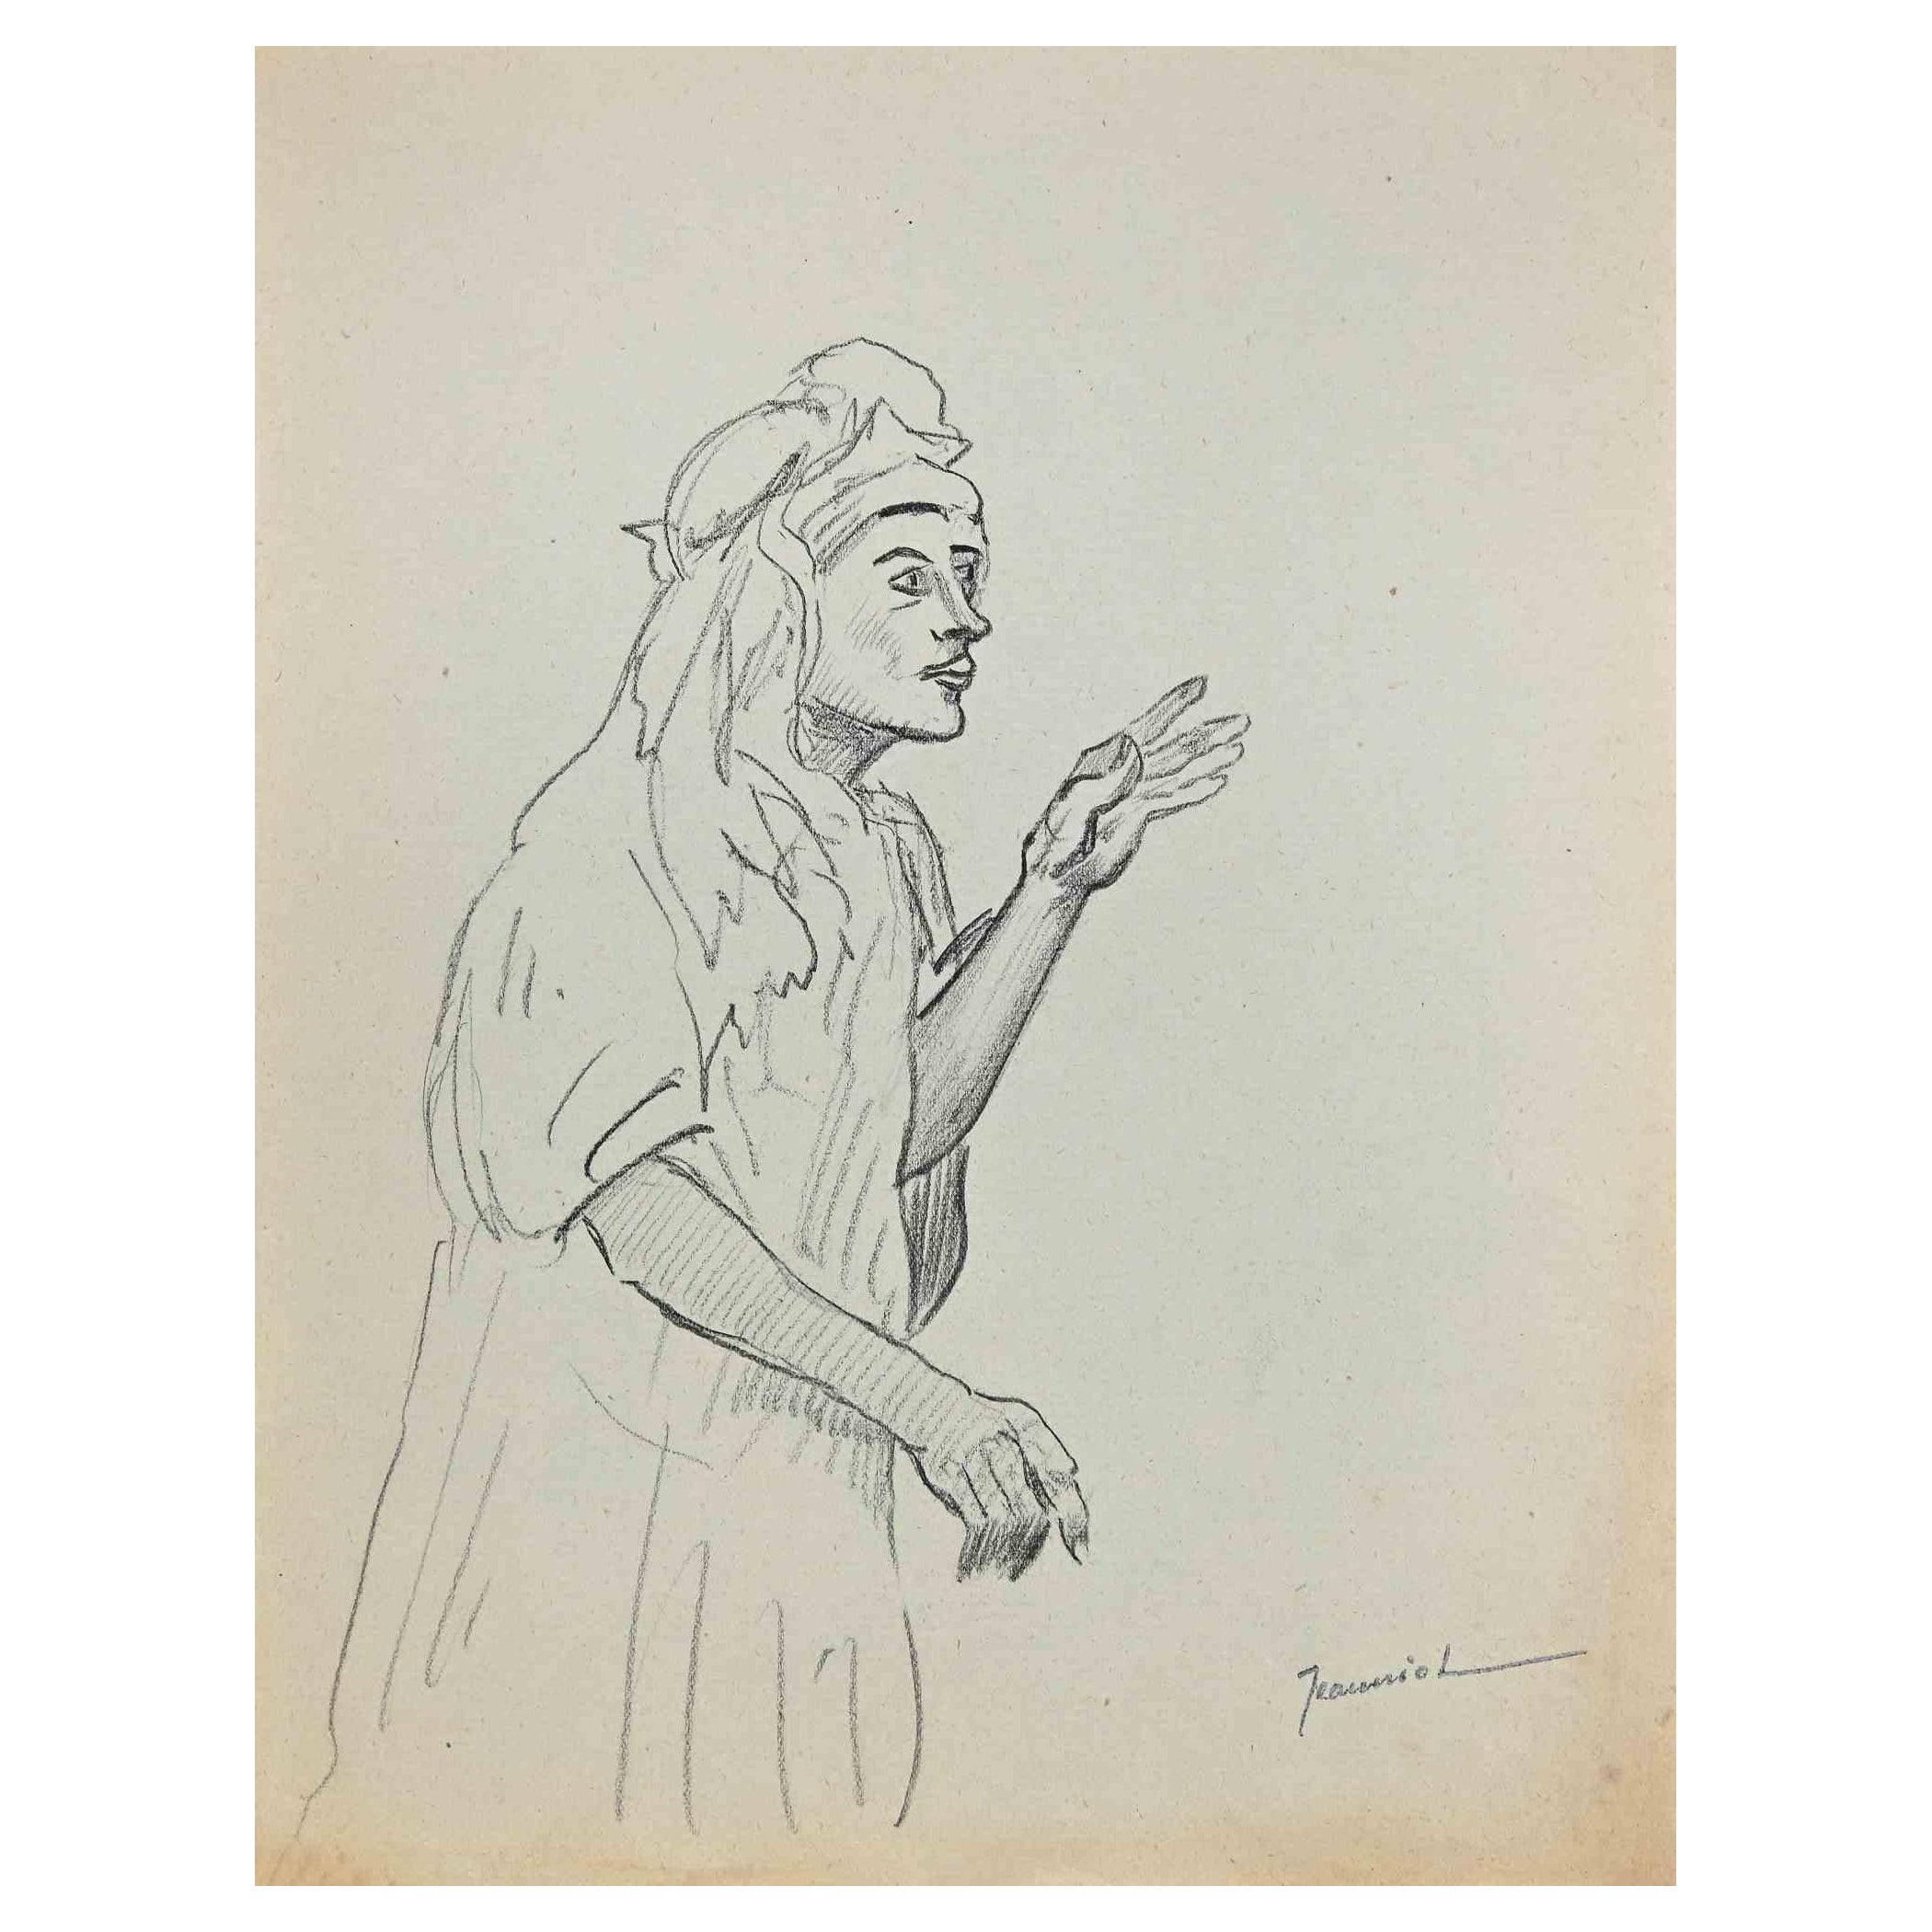 Le Sorcier est un dessin original sur papier réalisé par le peintre Pierre Georges Jeanniot (1848-1934) dans les années 1890.

Dessin au crayon.

Signé à la main en bas.

Bonnes conditions.

Pierre-Georges Jeanniot (1848-1934) est un peintre,